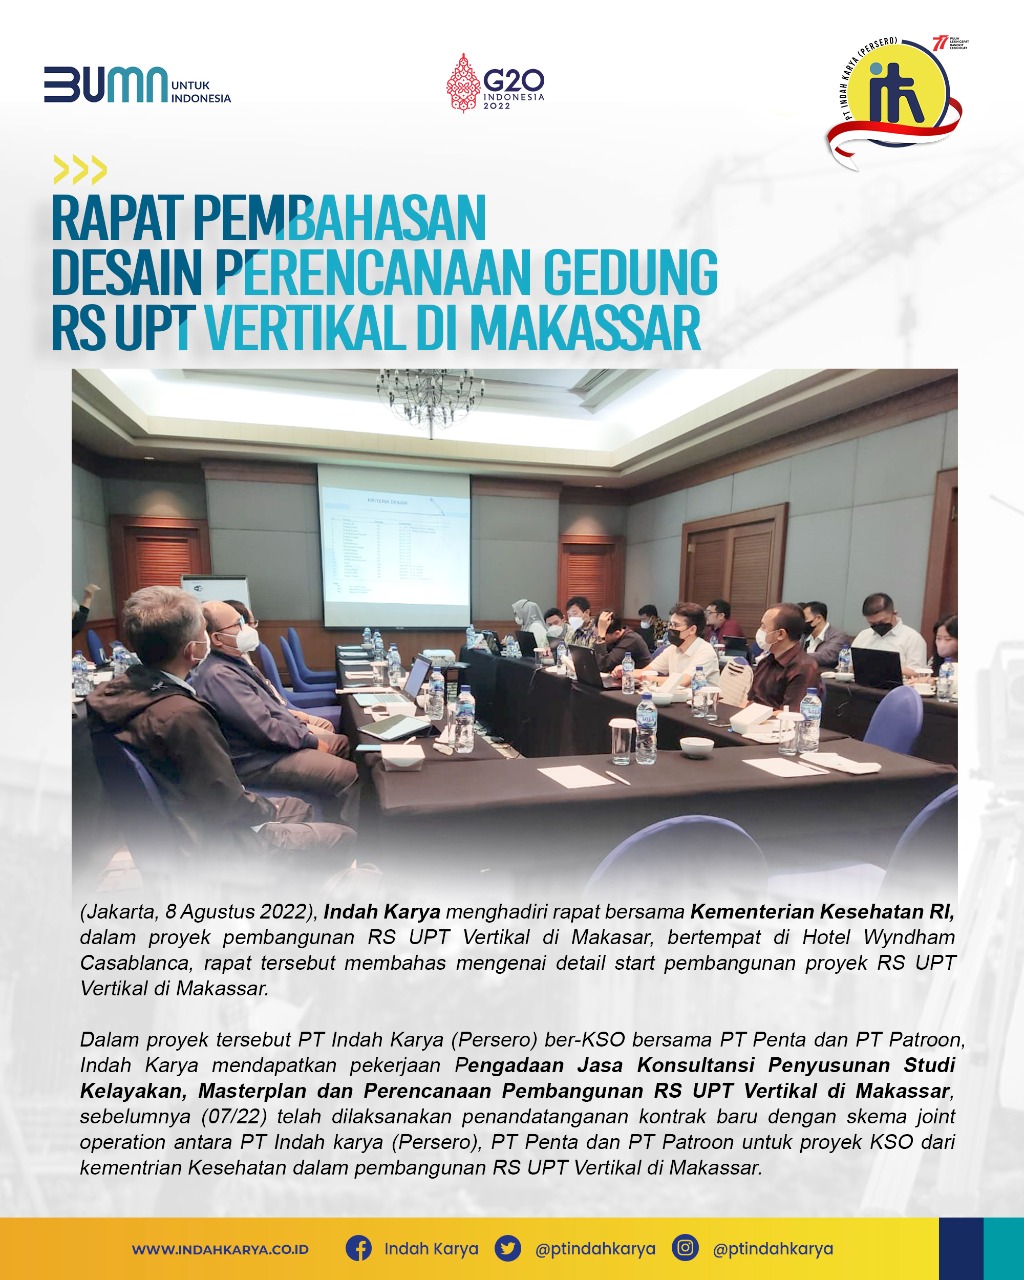 Rapat pembahasan desain perencanaan gedung RS UPT Vertikal di Makassar 